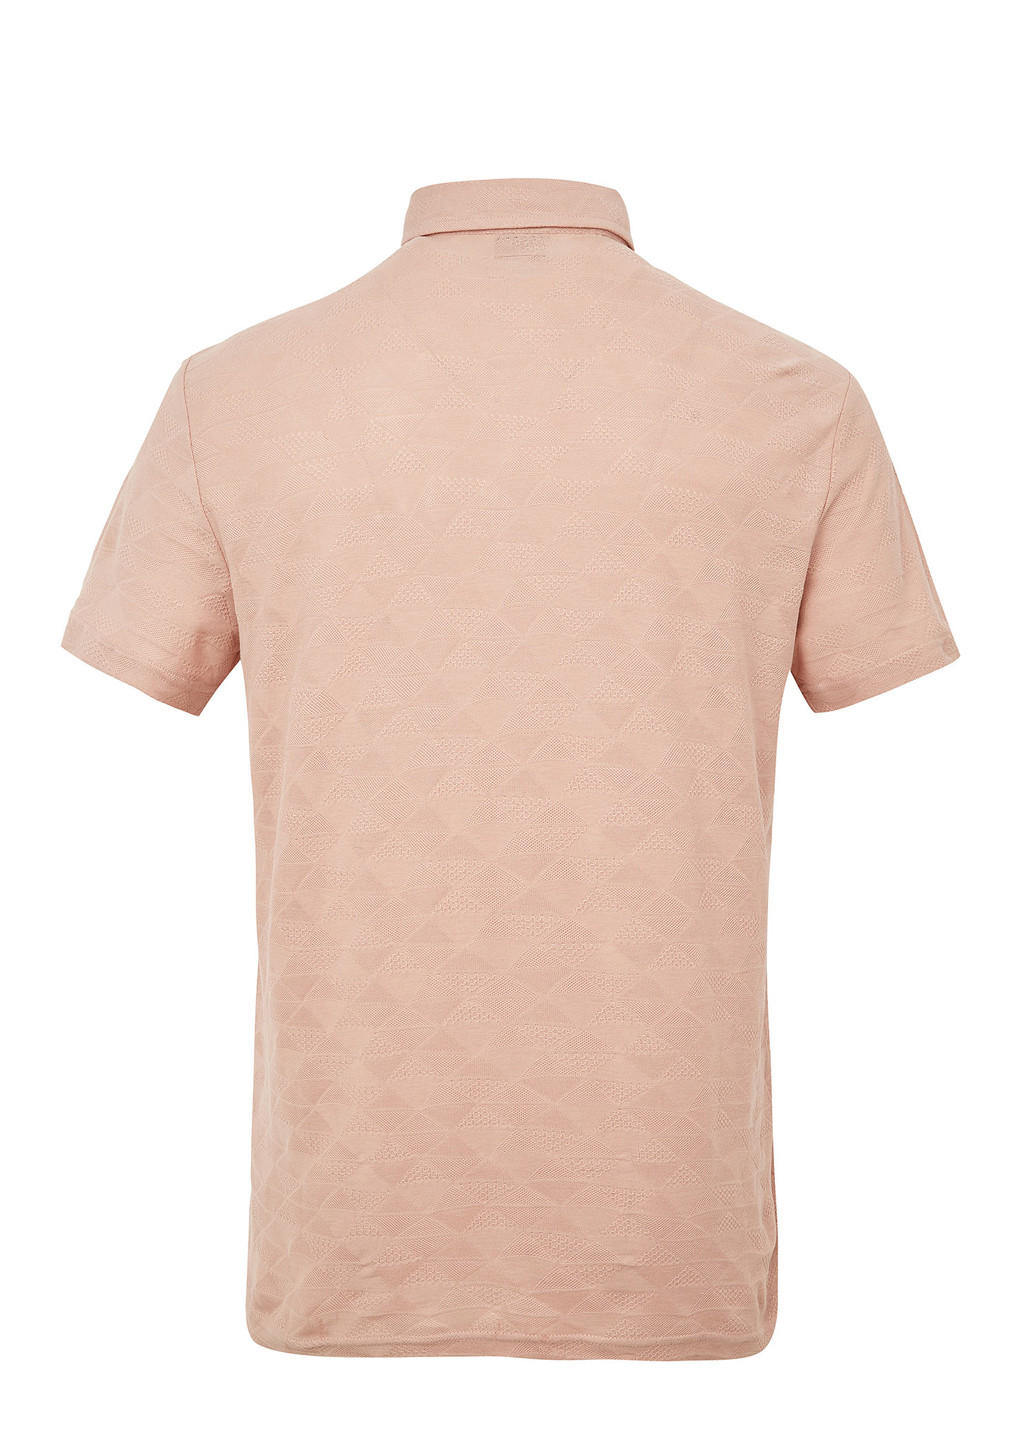 Светло-бежевая футболка-поло для мужчин DeFacto однотонная